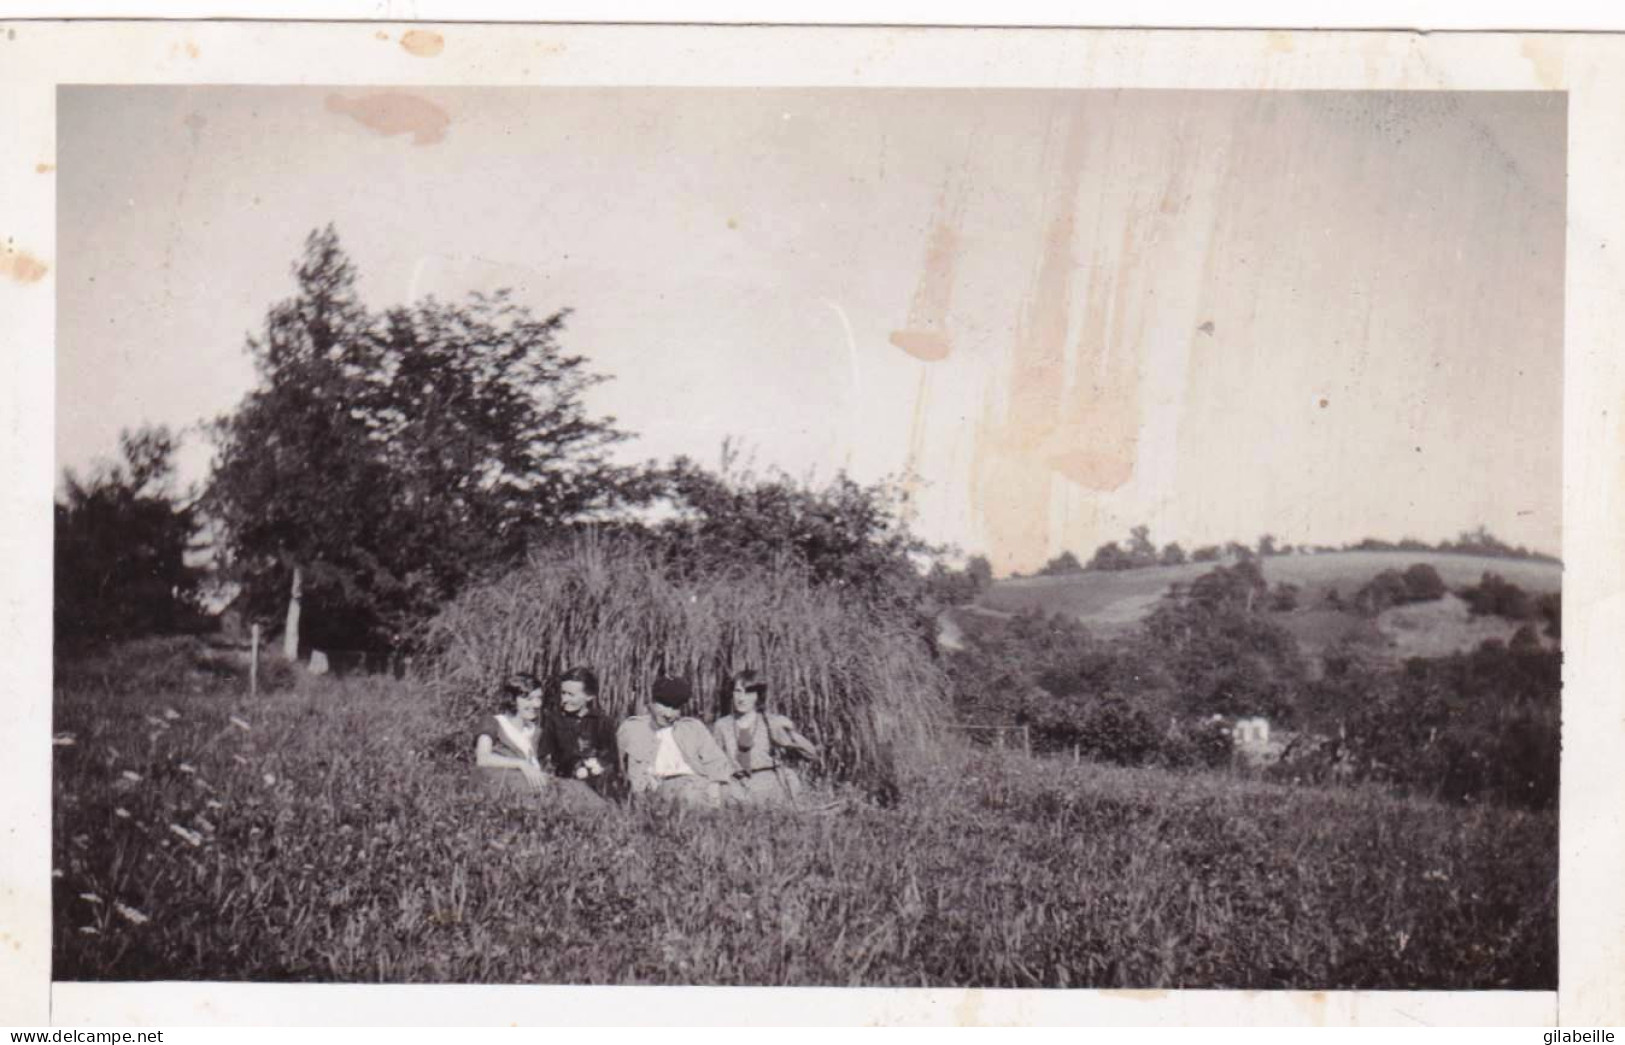 Photo Originale - 1931 - AUBERTIN (66 ) Pyrenées Atlantiques - Dans Le Pré Devant Le Presbytere - Lieux